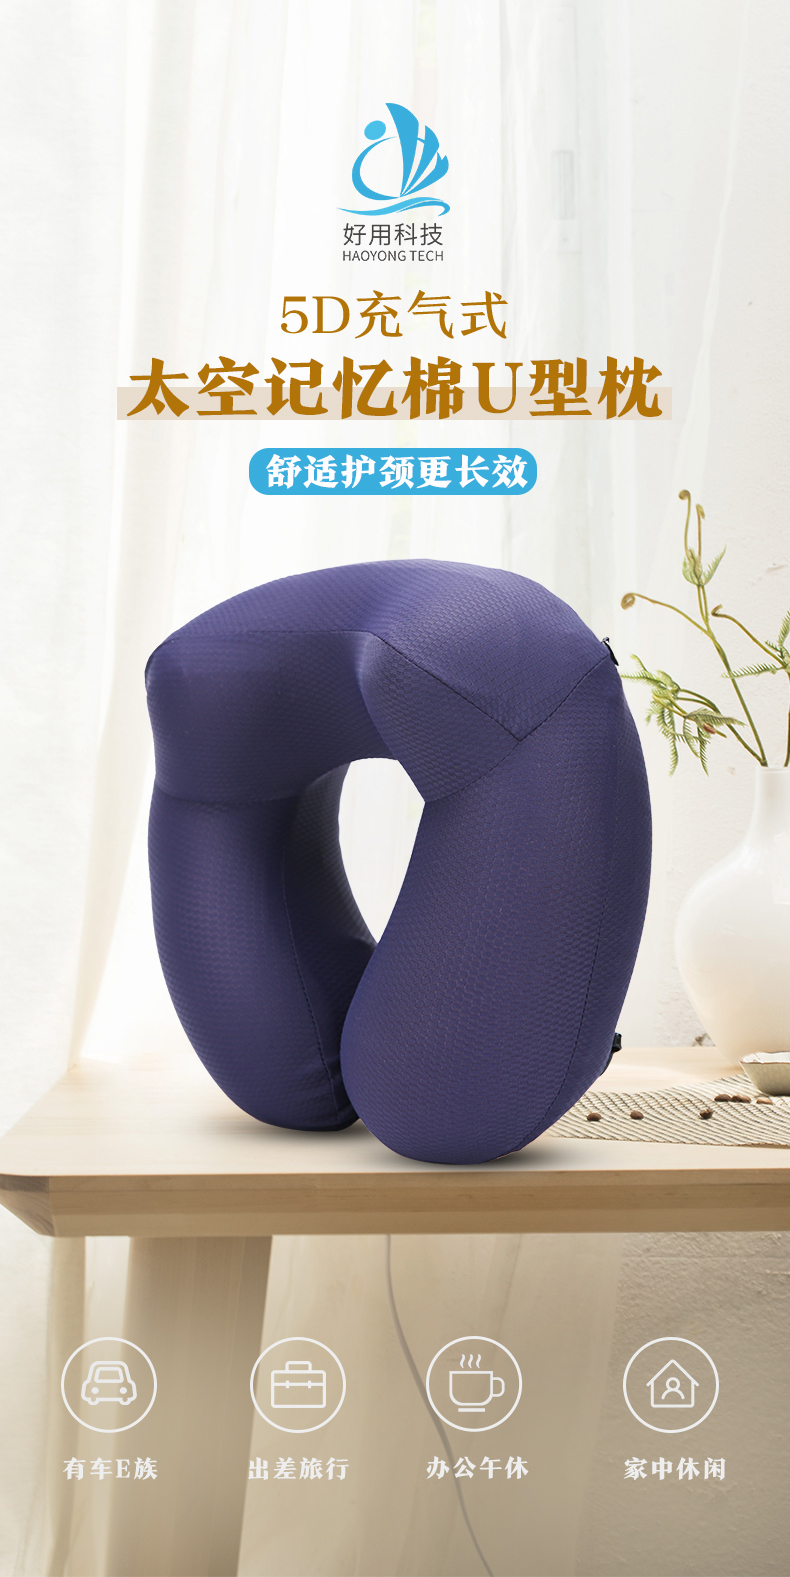 正宗护颈U形枕一件代发_u形枕logo相关-广州好用科技有限公司